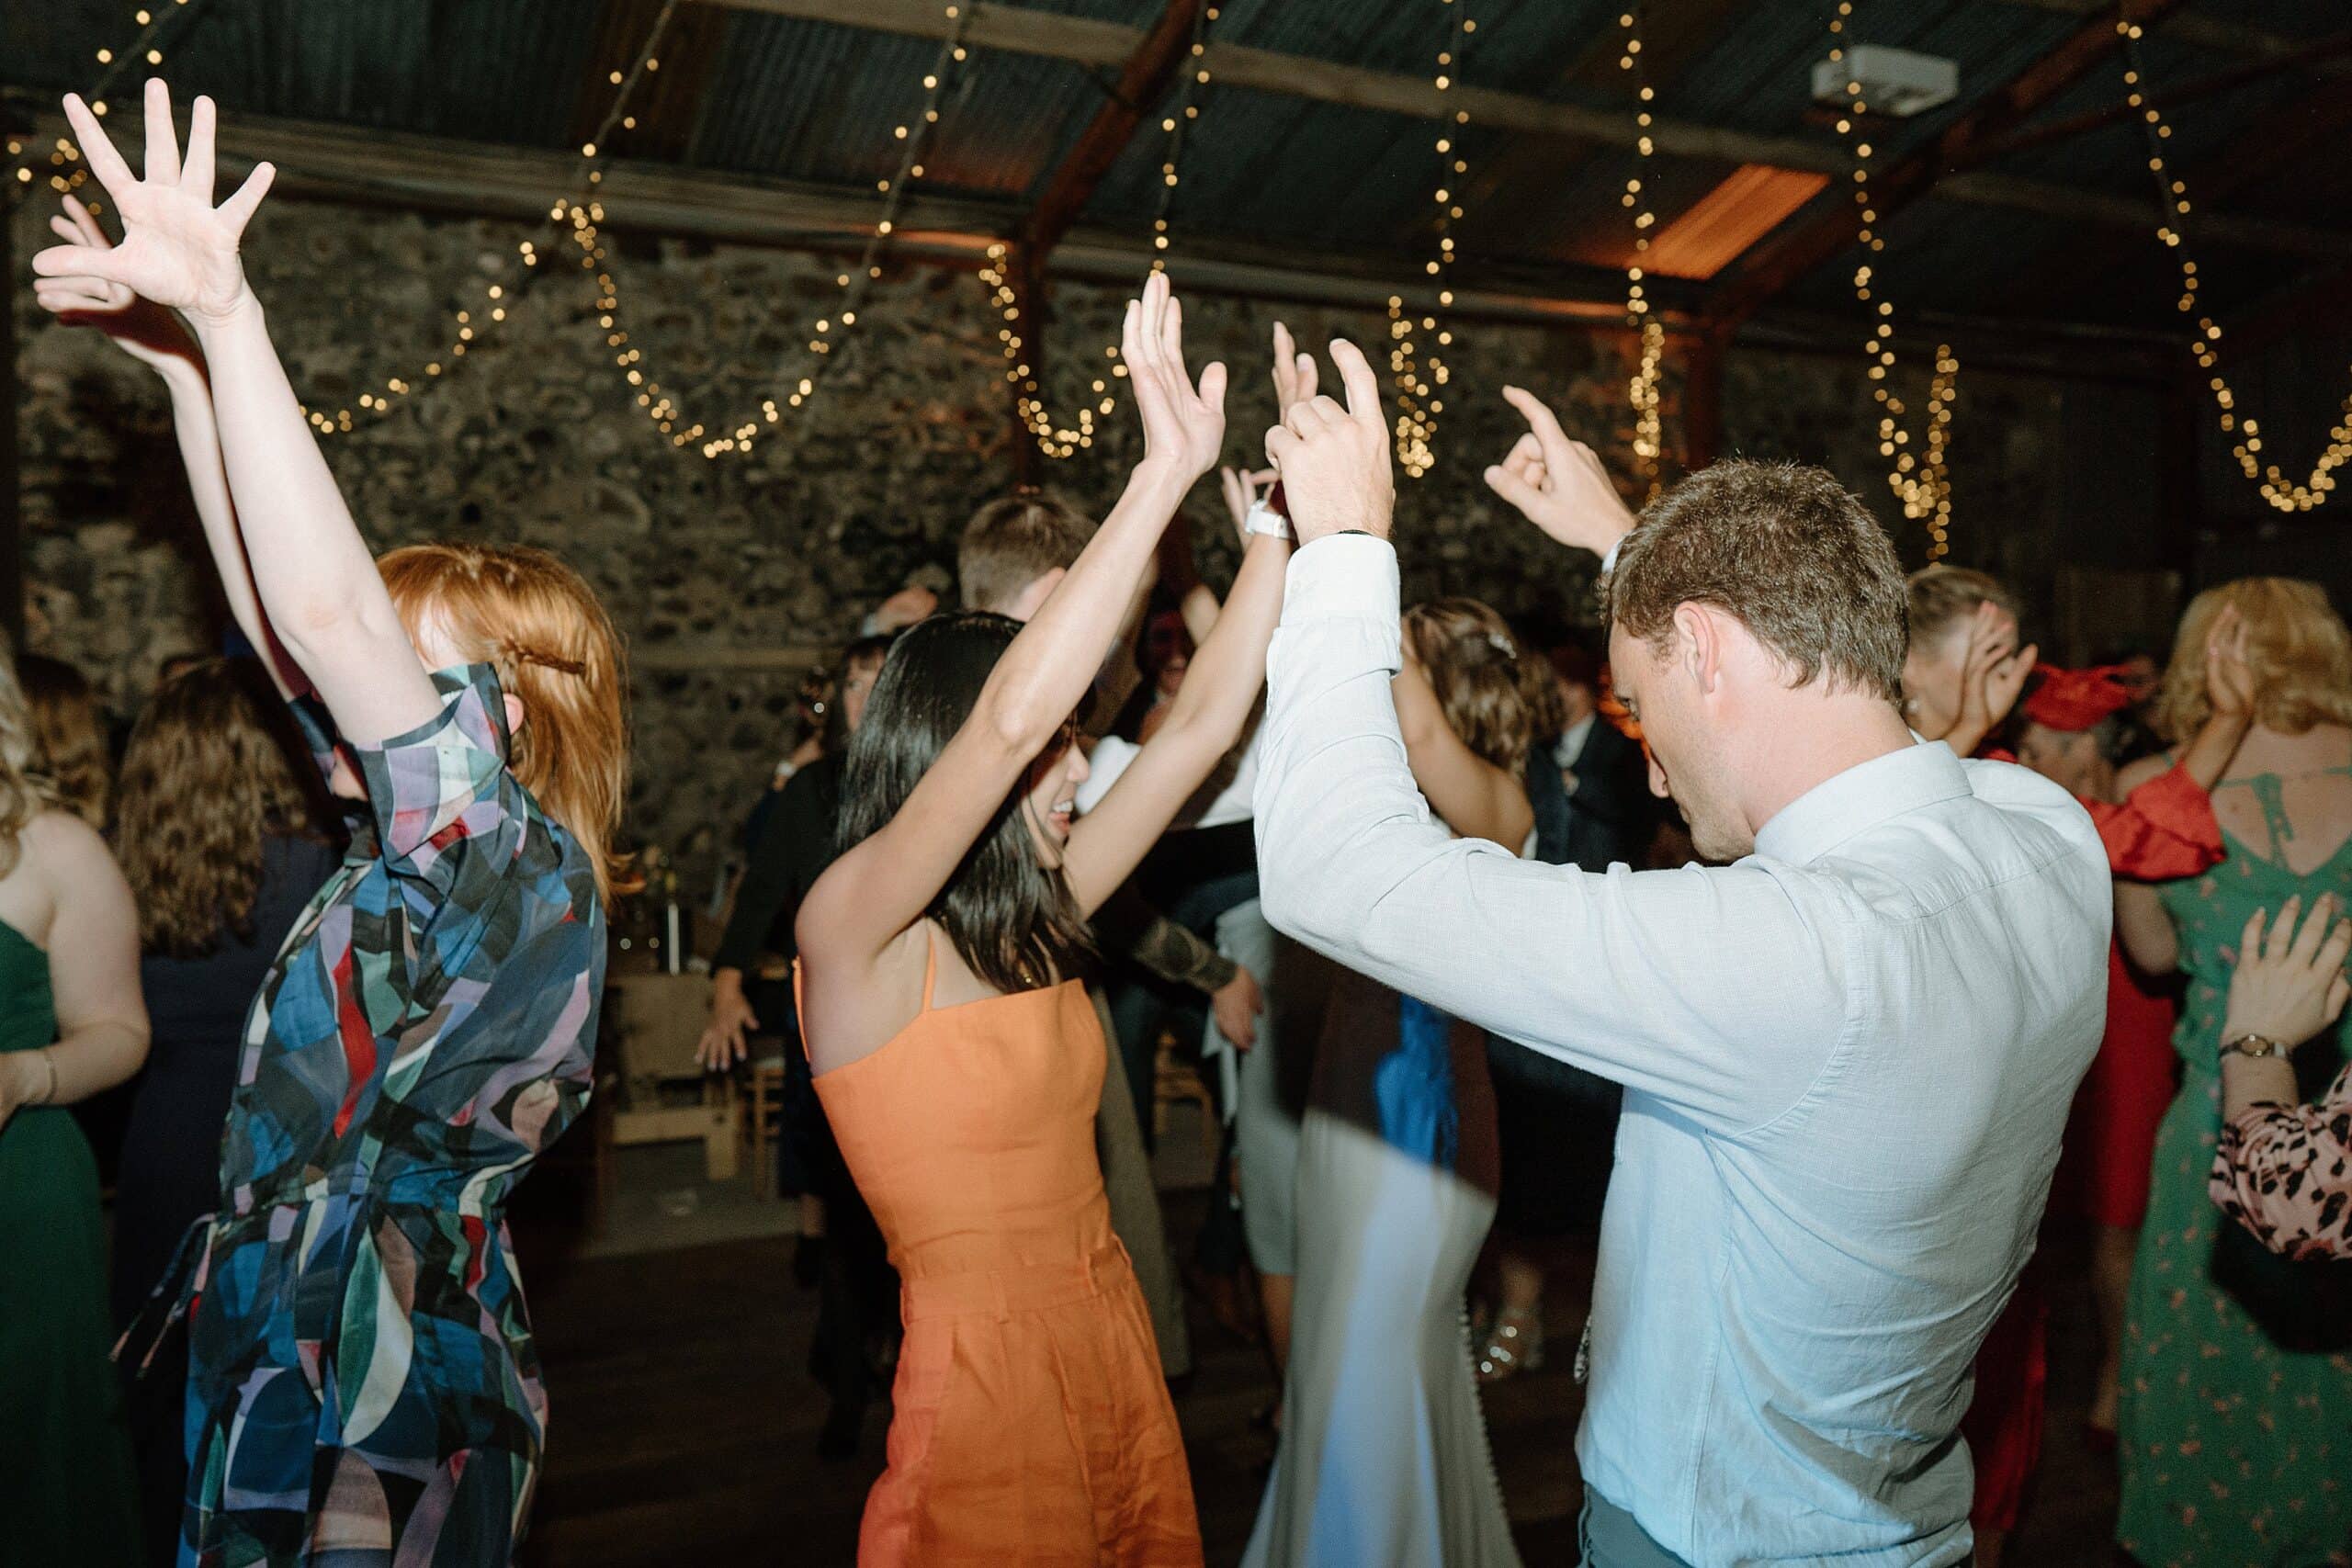 the wedding party dancing beneath festoon lights in the wedding barn at harelaw farm wedding venue fenwick scotland